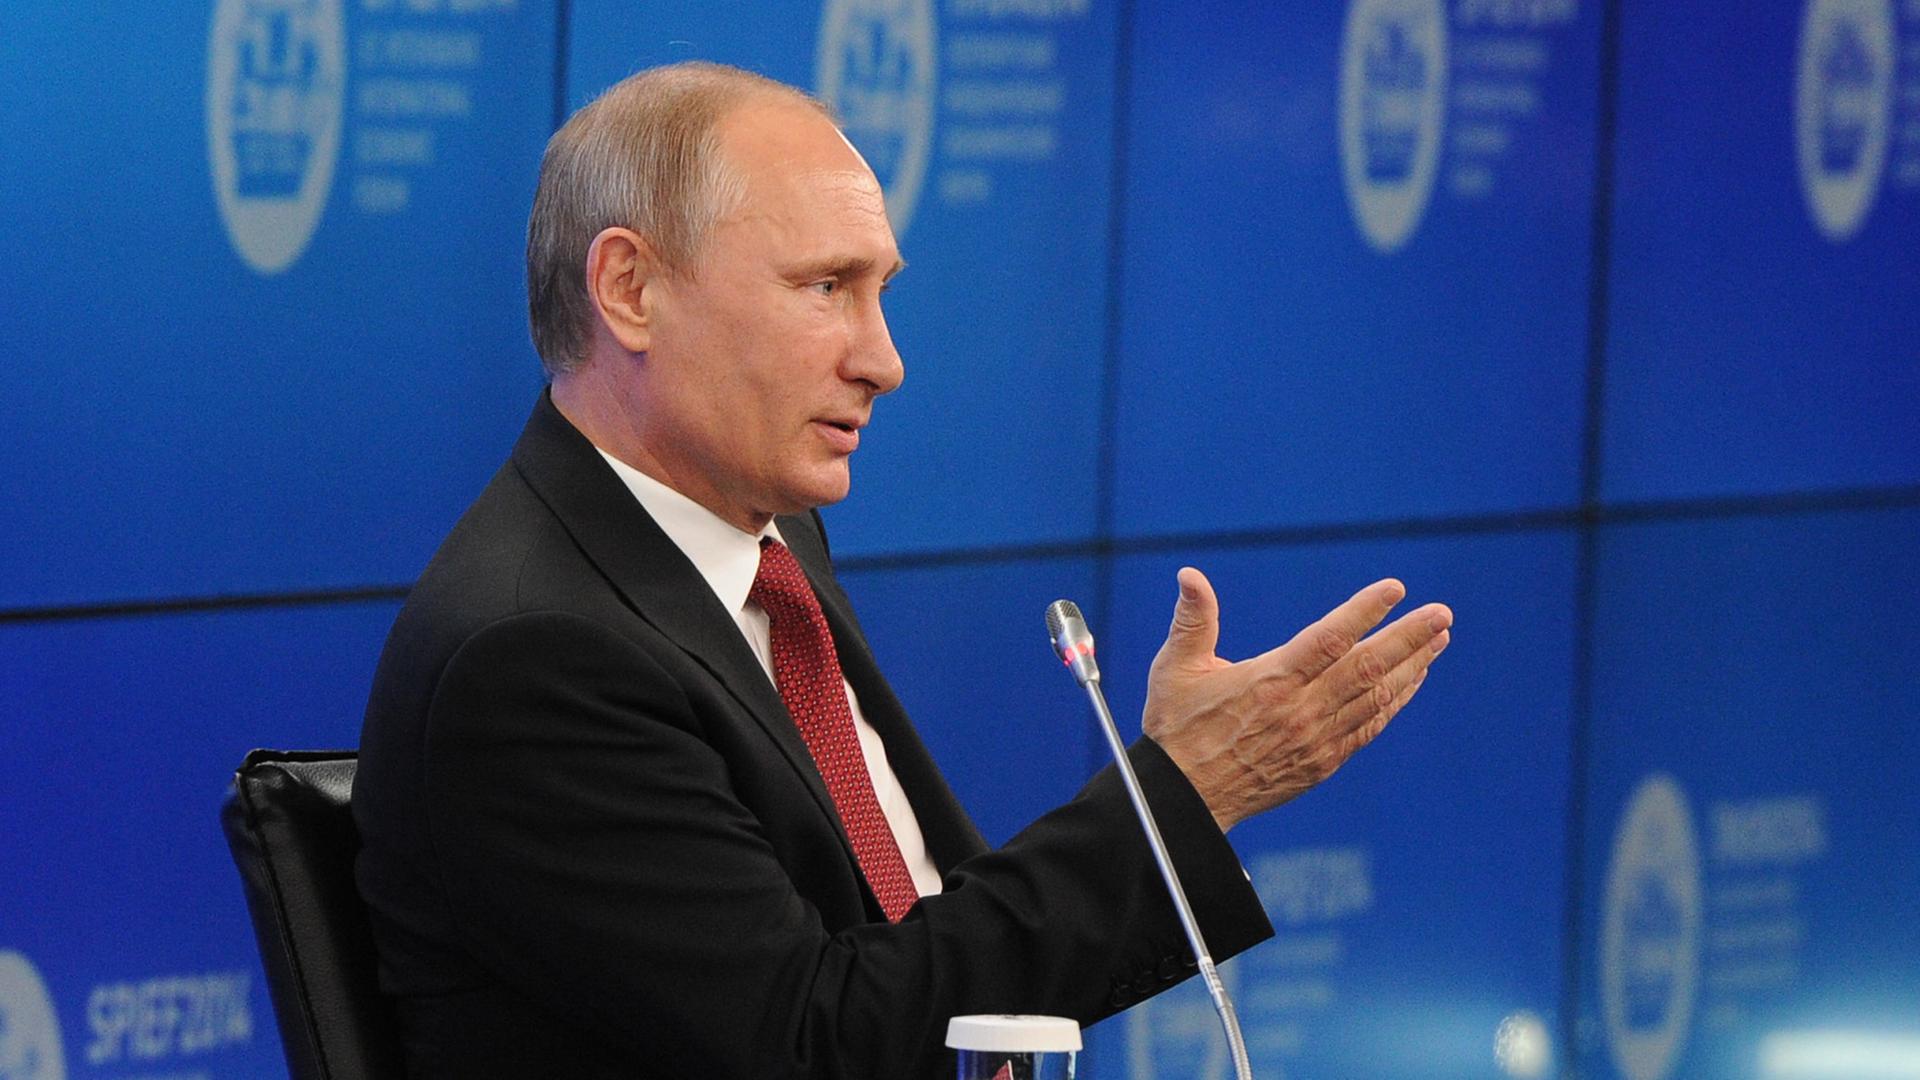 Wladimir Putin gestikuliert während seiner Rede an einem kleinen Tisch, neben dem er sitzt; hinter ihm eine blaue Wand mit Logos des Veranstalters